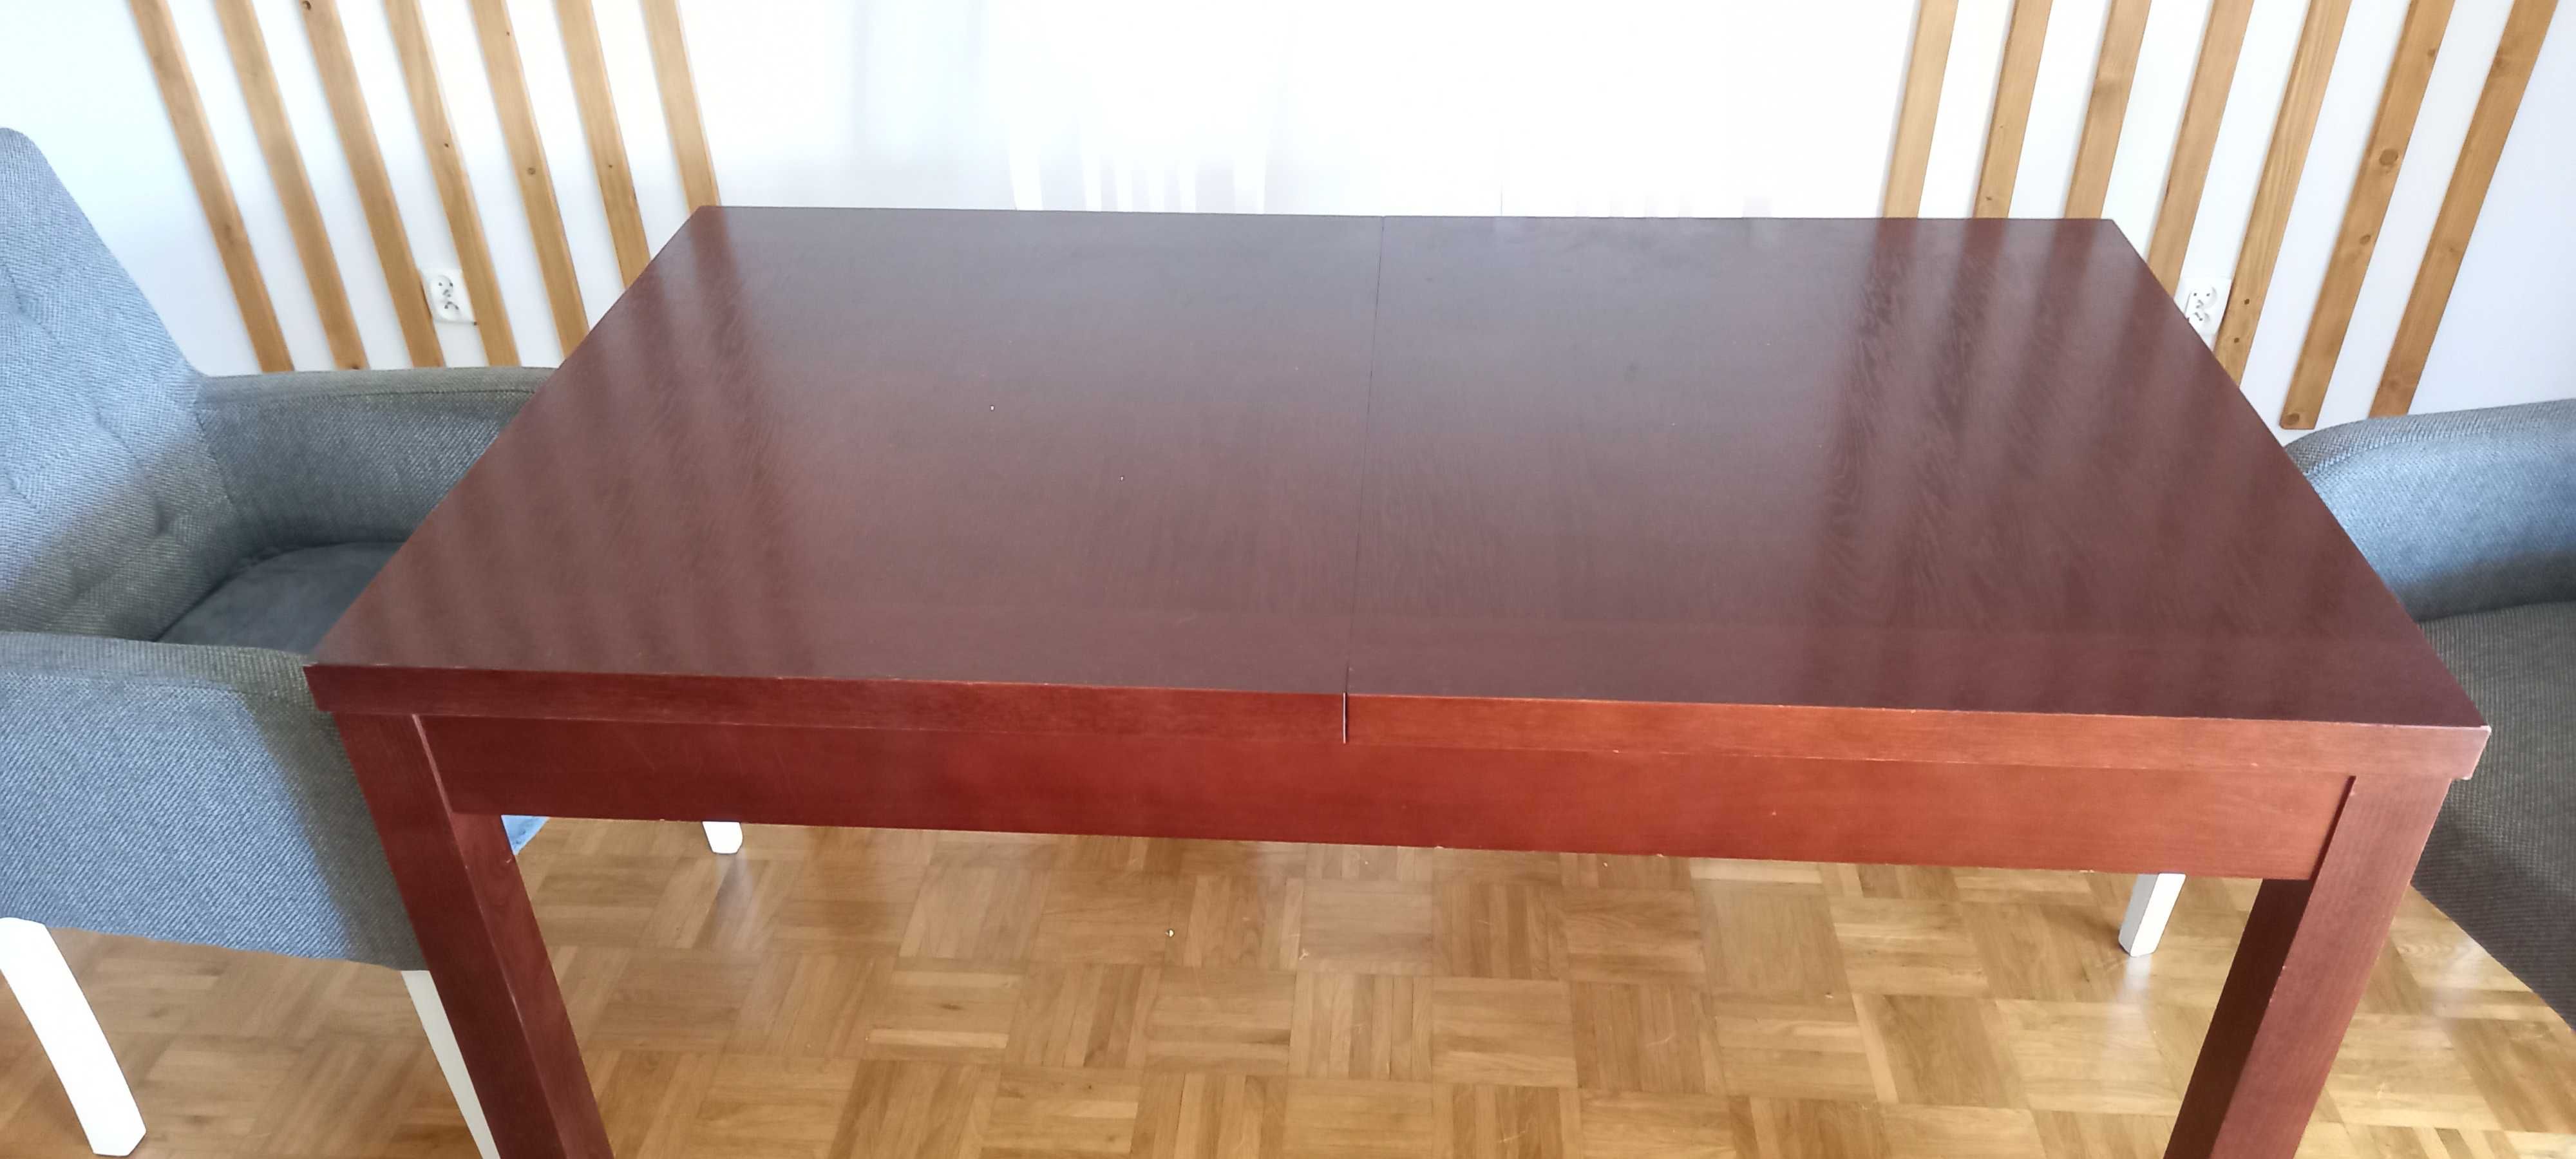 Stół rozkładany w bdb stanie